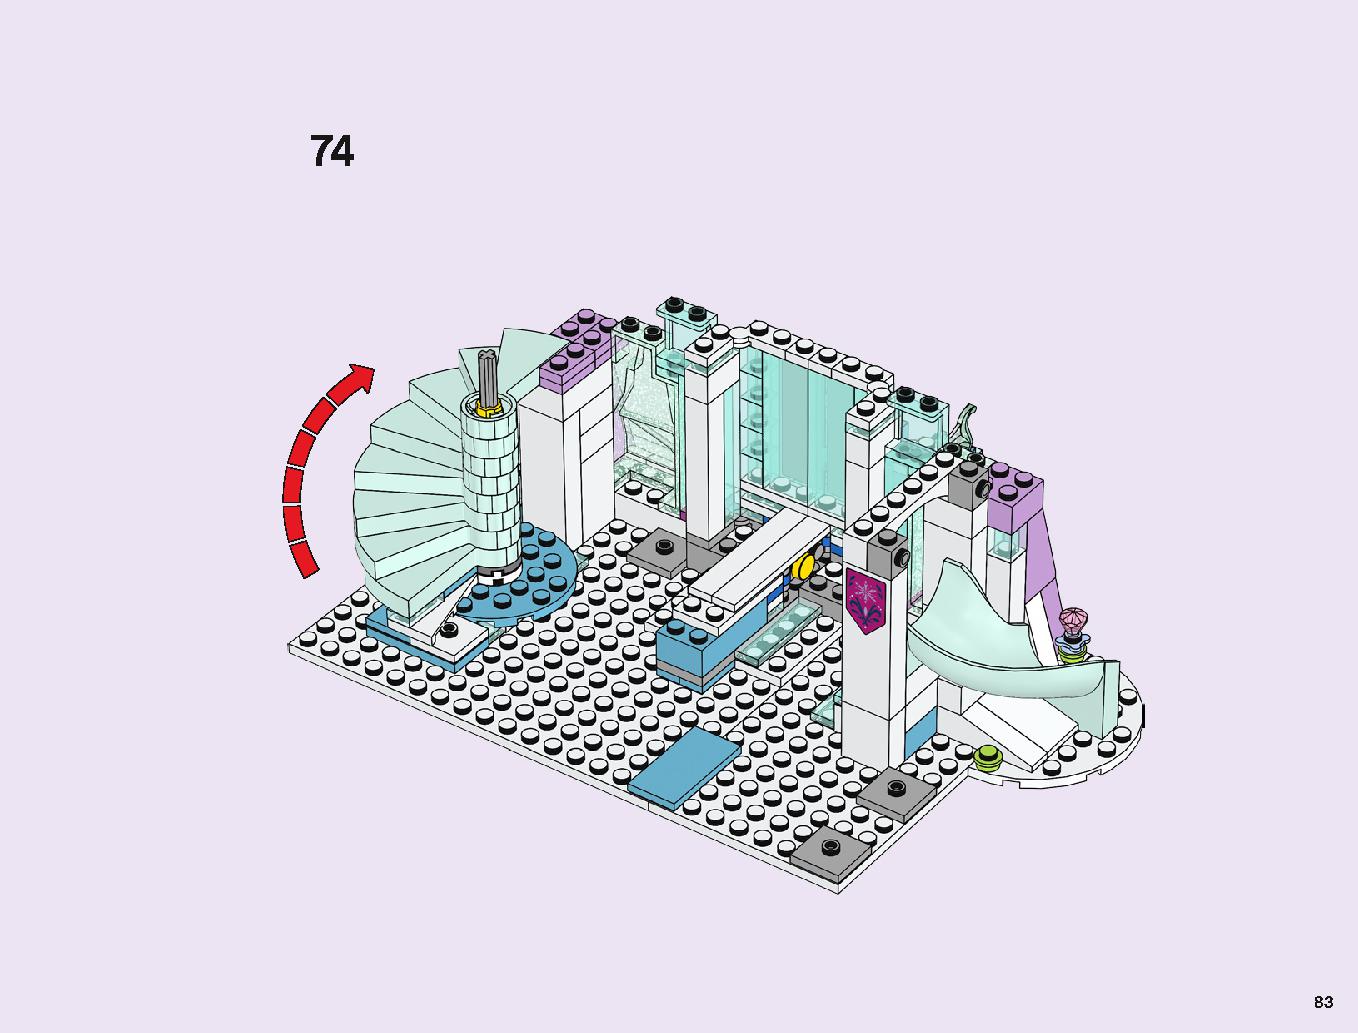 アナと雪の女王 “アイスキャッスル・ファンタジー” 43172 レゴの商品情報 レゴの説明書・組立方法 83 page